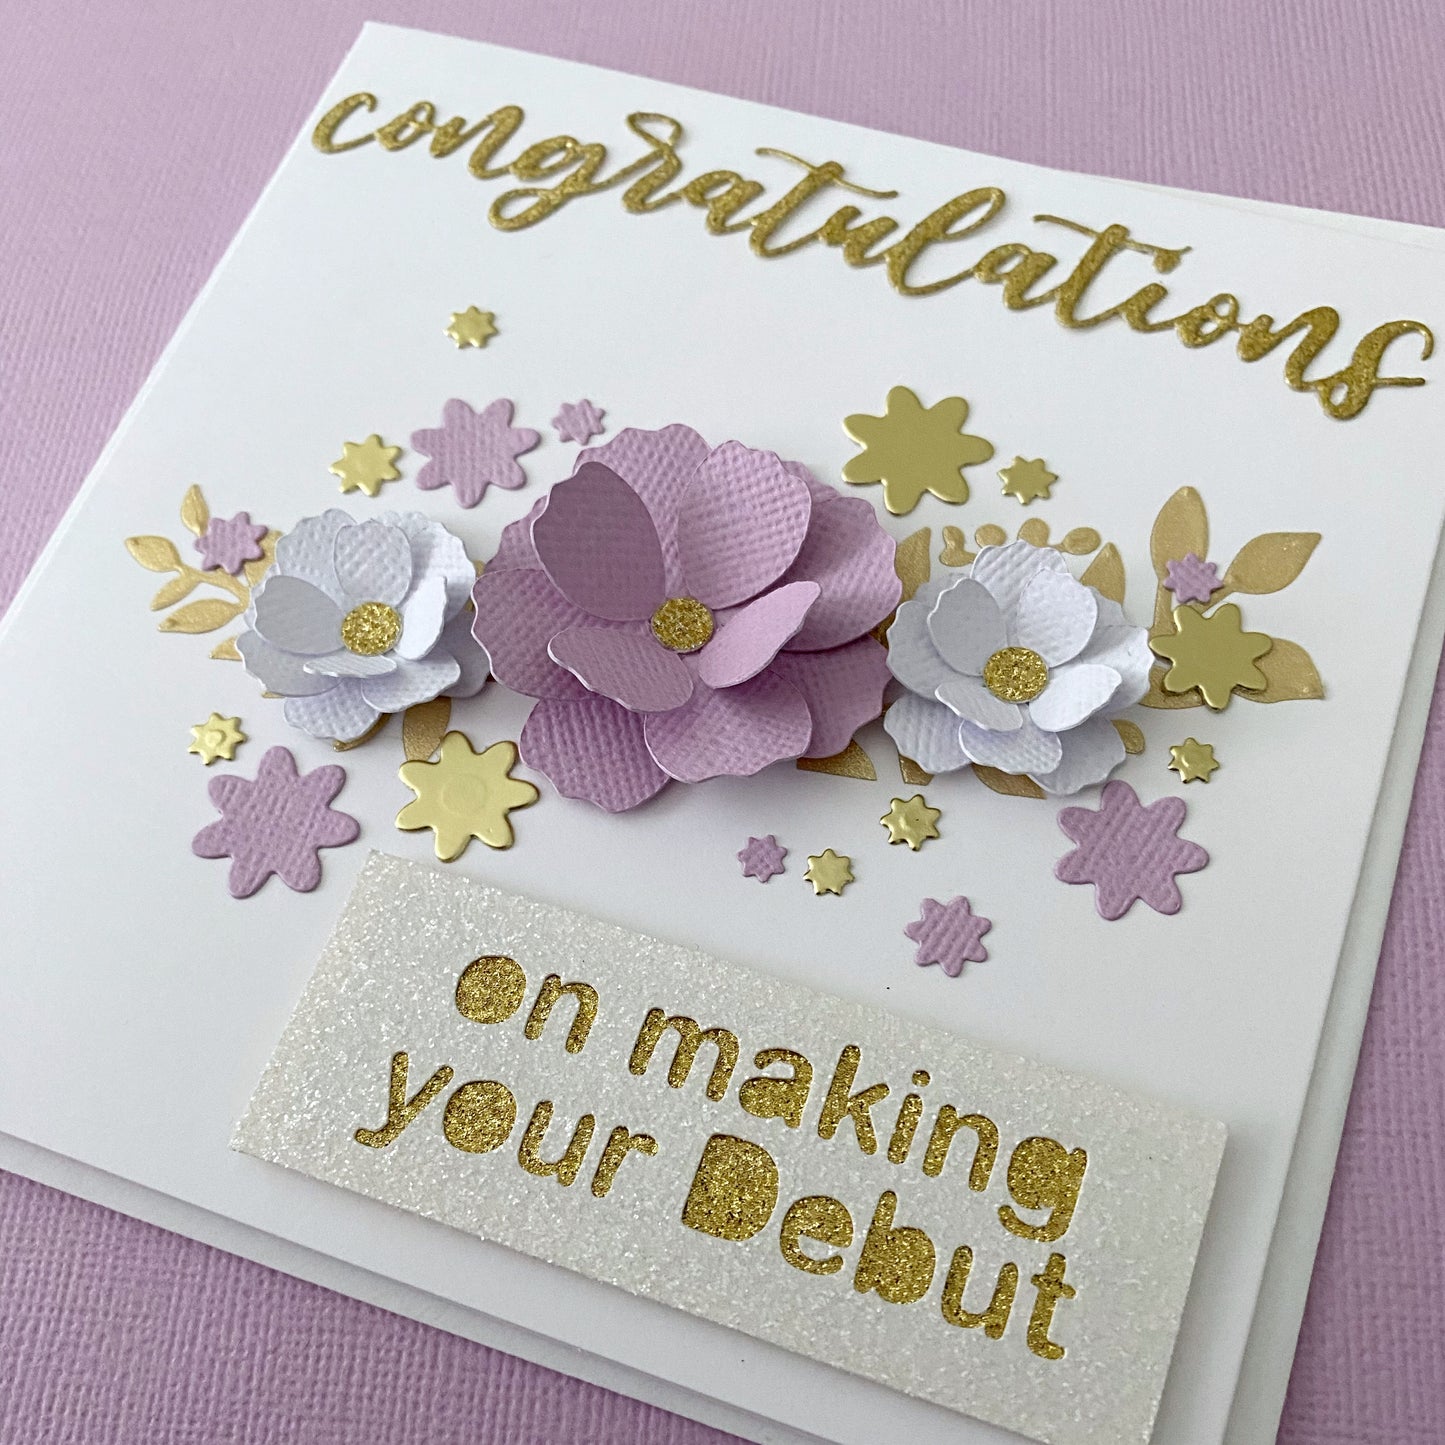 Floral debutante card, congratulations on debut.